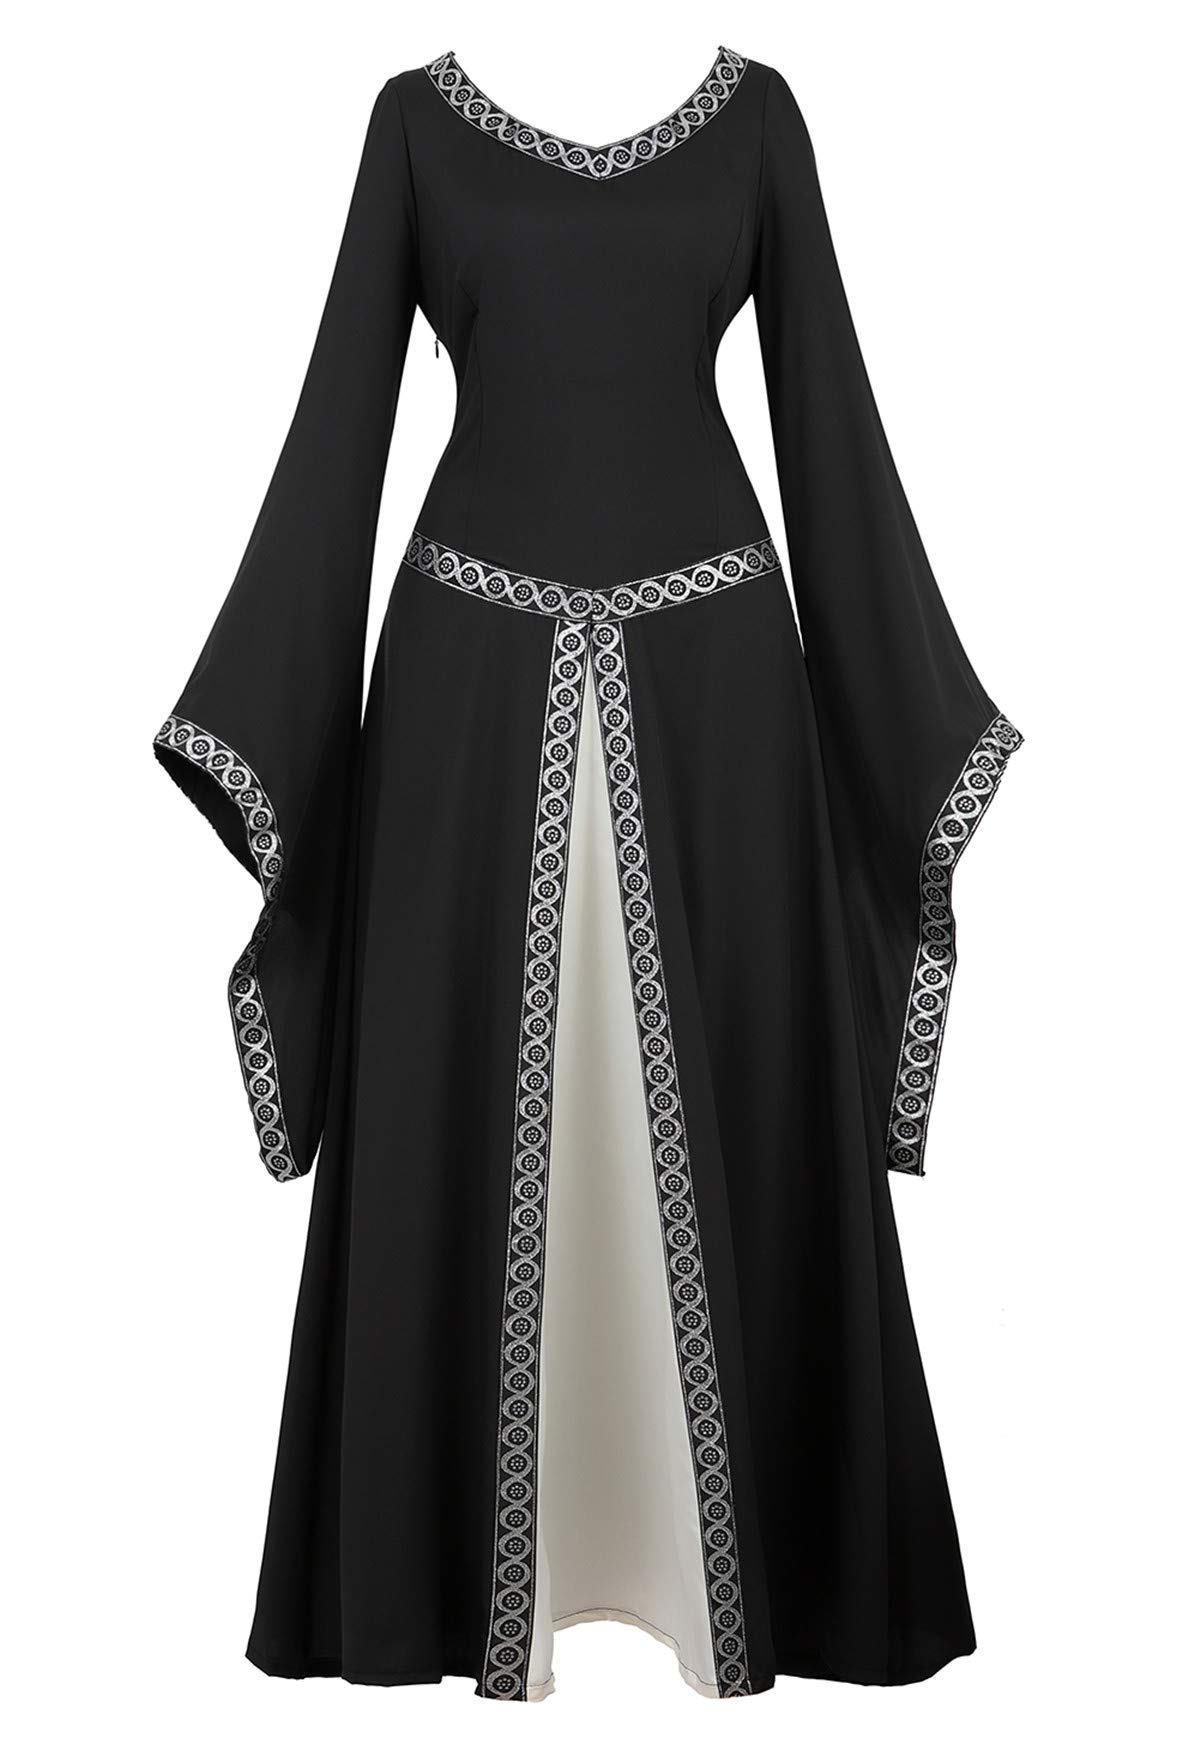 Renaissance Irish Medieval Dress Women's Plus Size Long Dress Lace Up Costume Vintage Dress